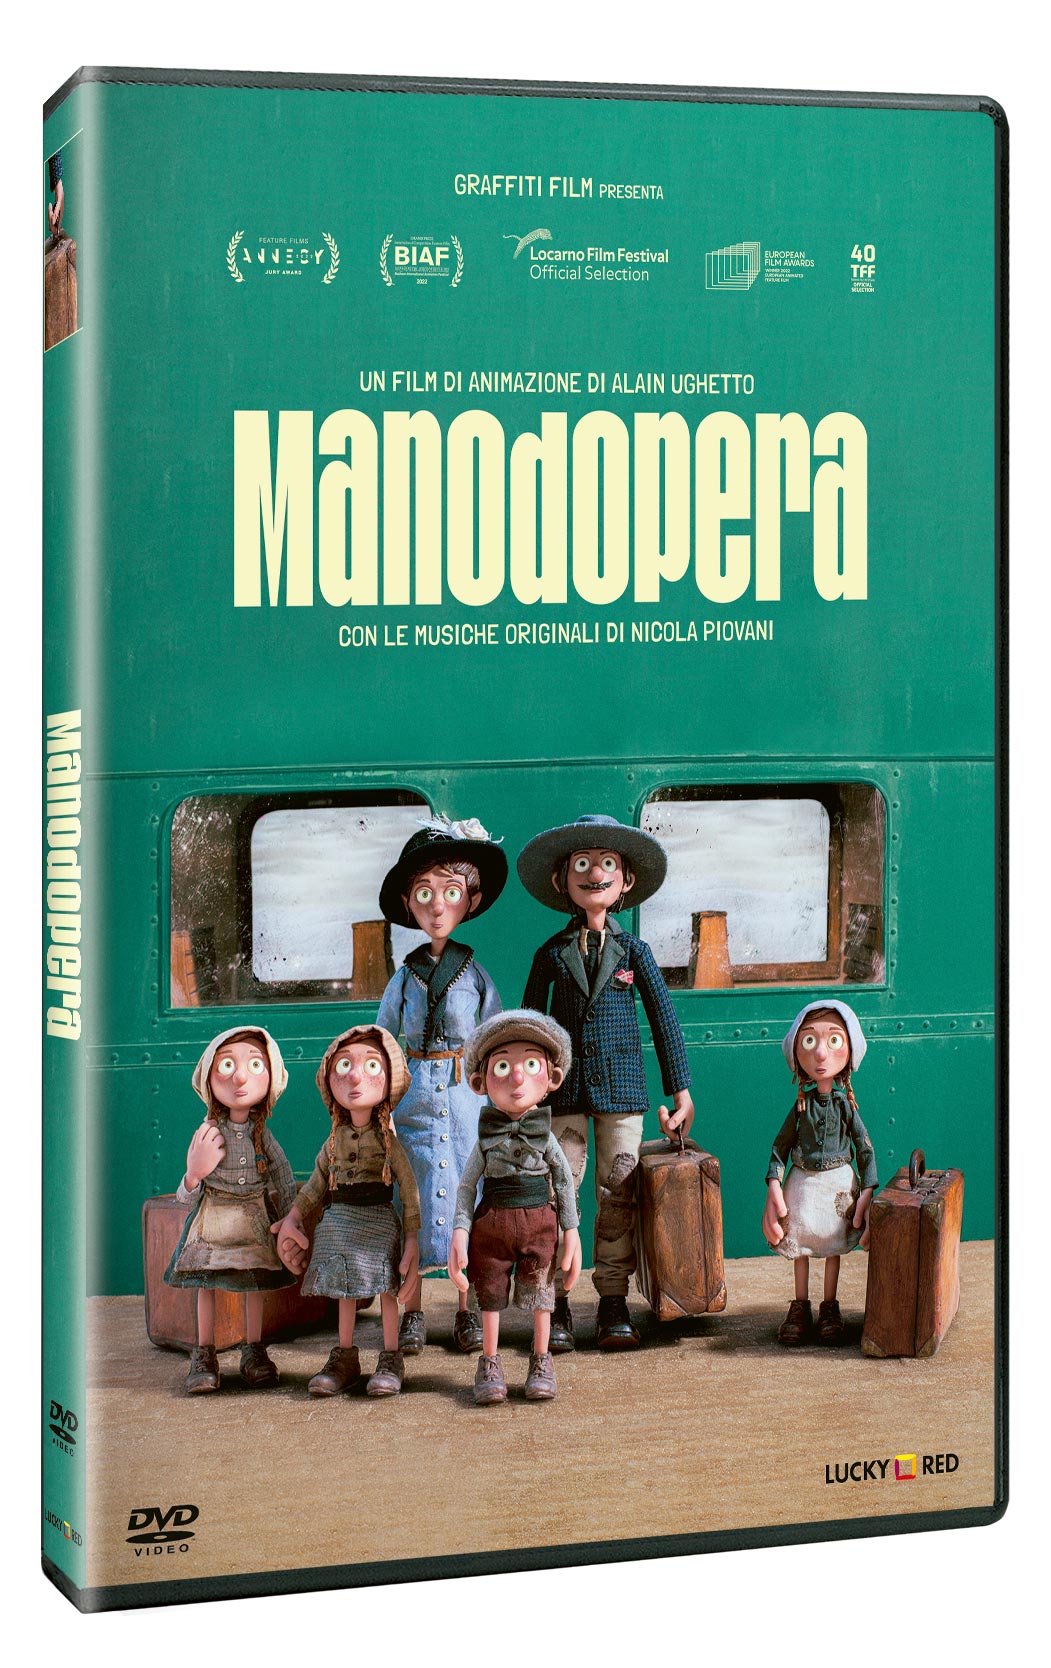 Manodopera in DVD